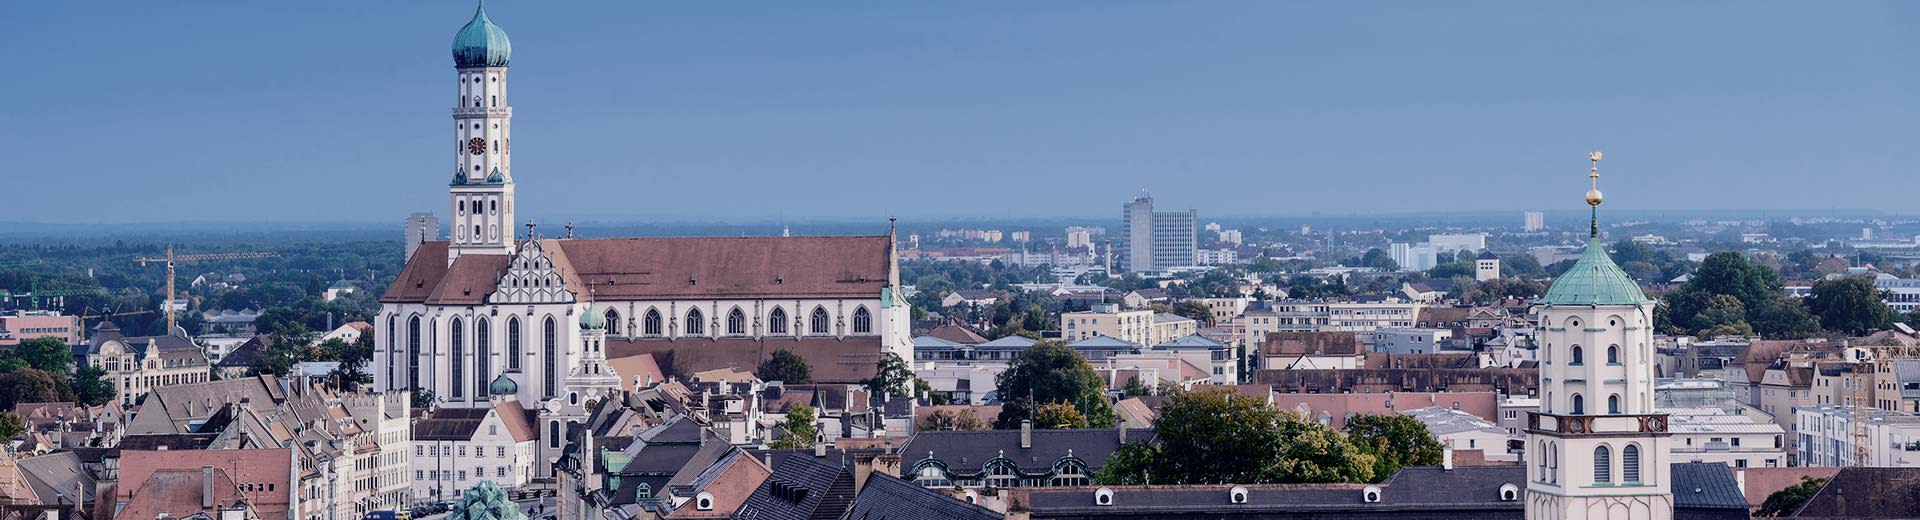 Centro de la ciudad de Augsberg en un día soleado con el ayuntamiento a la vista y el Perlachturm de pie.